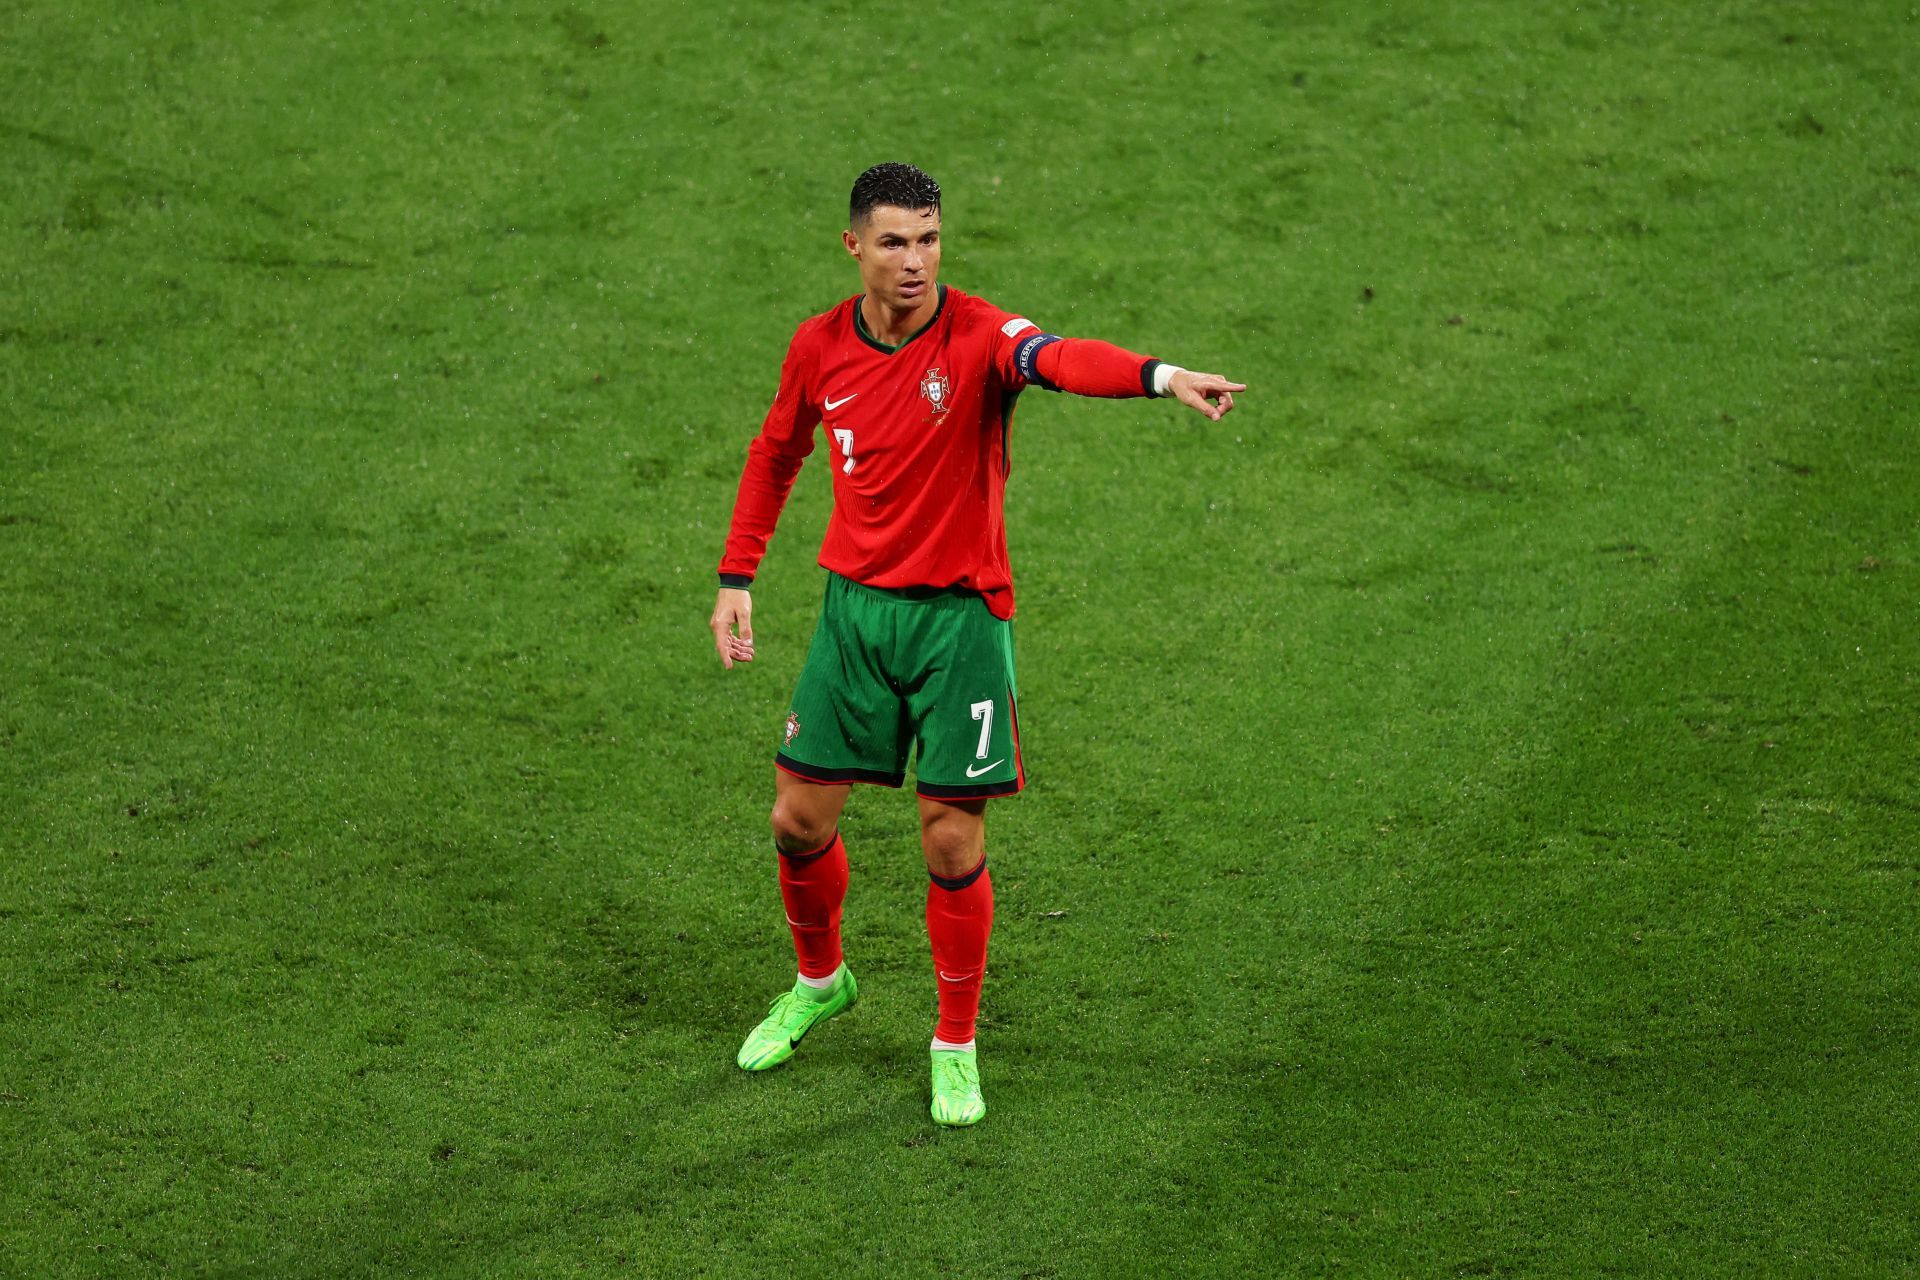 Portugal captain Cristiano Ronaldo